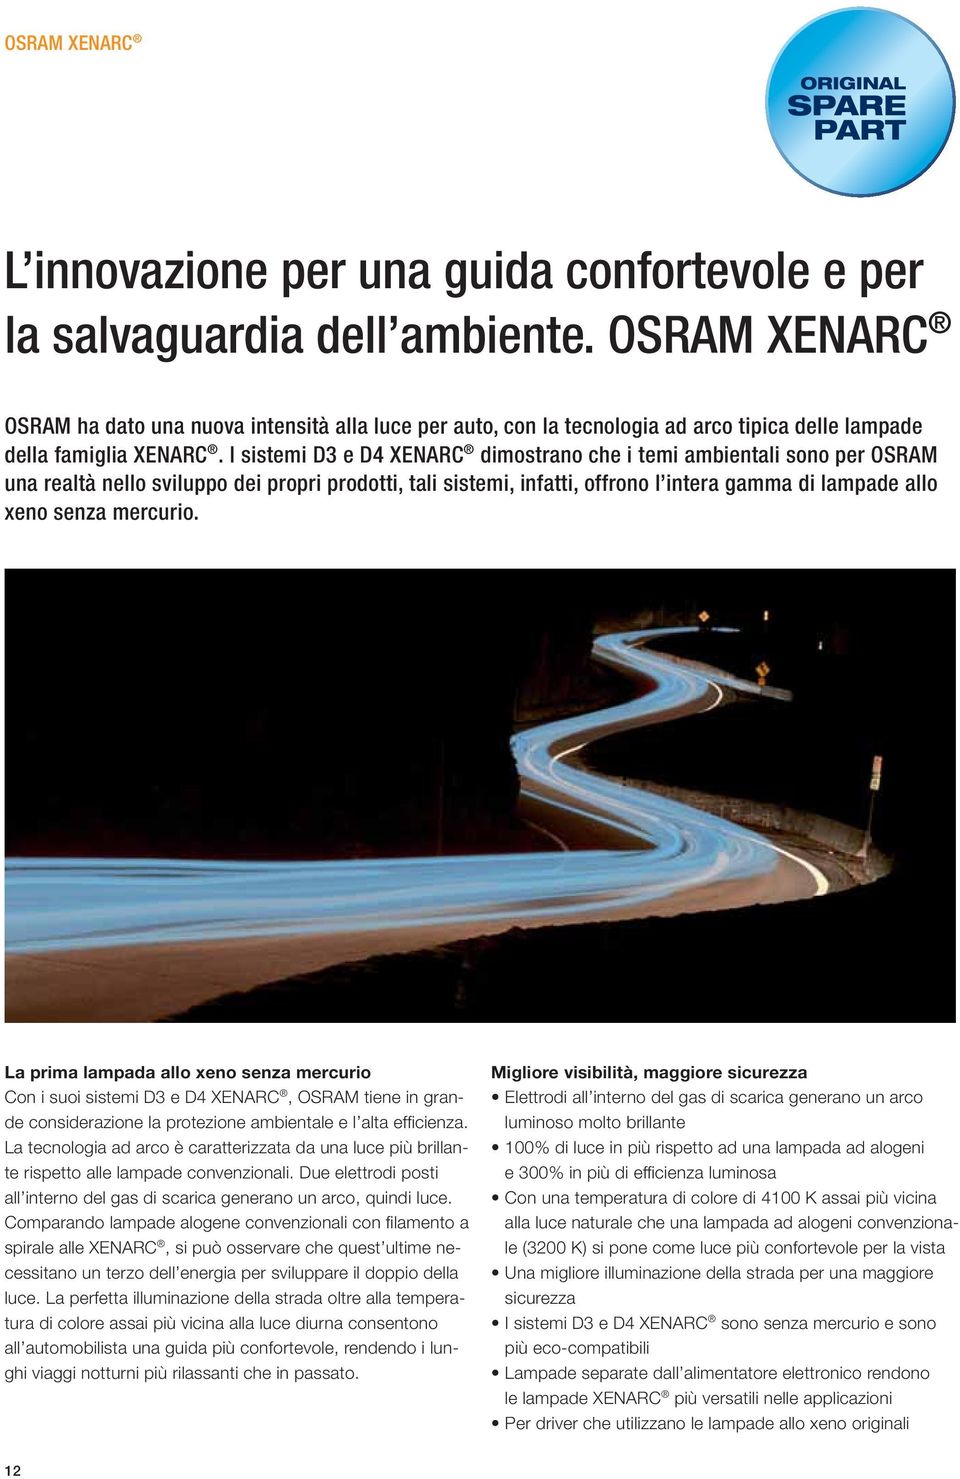 I sistemi D3 e D4 XENARC dimostrano che i temi ambientali sono per OSRAM una realtà nello sviluppo dei propri prodotti, tali sistemi, infatti, offrono l intera gamma di lampade allo xeno senza